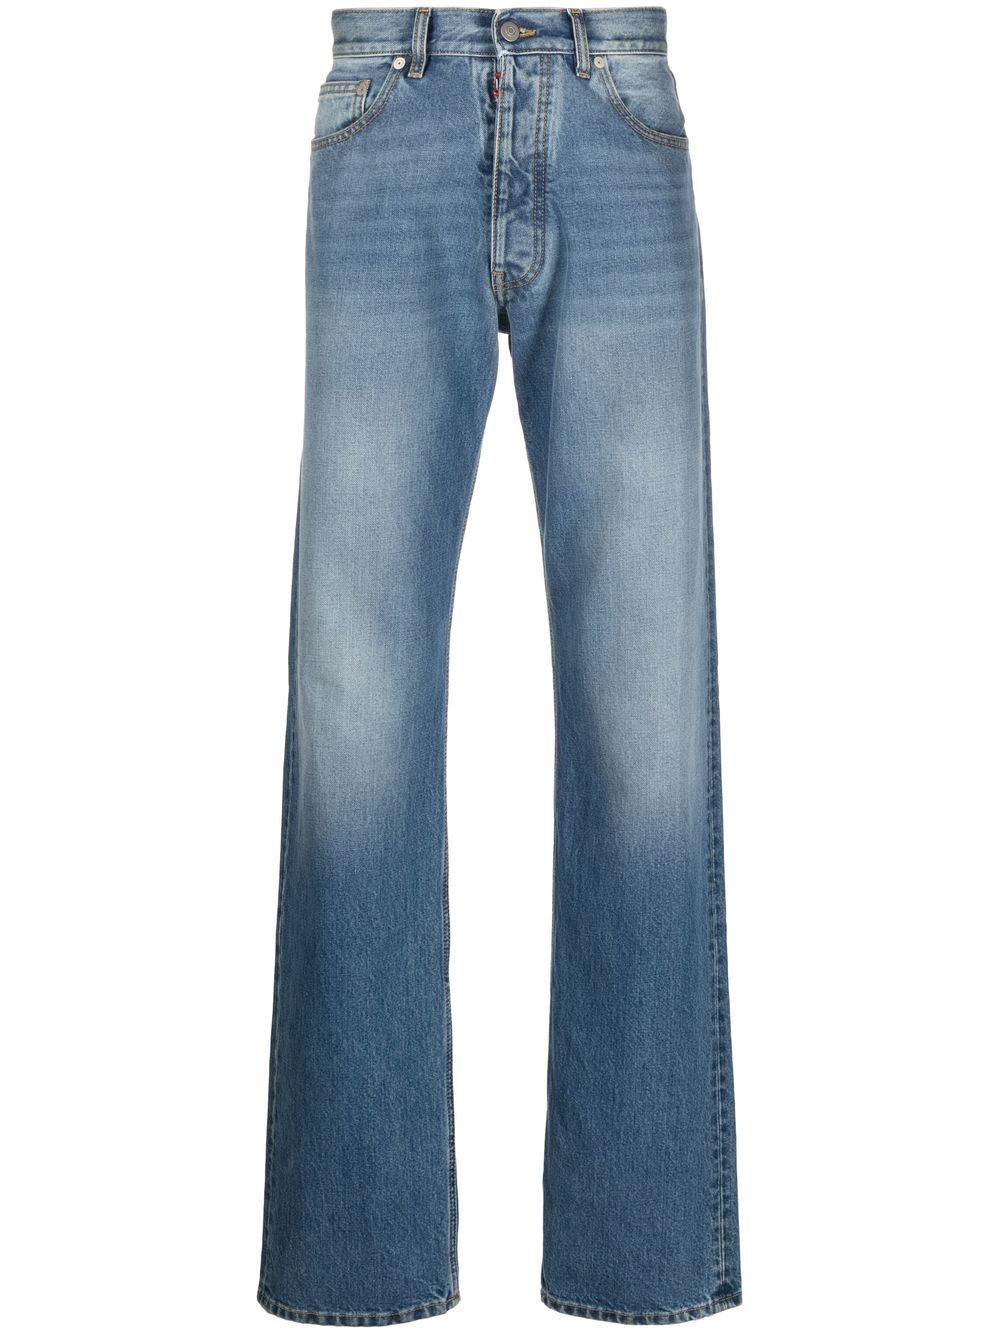 Shop Maison Margiela Four-stitch Straight-leg Jeans